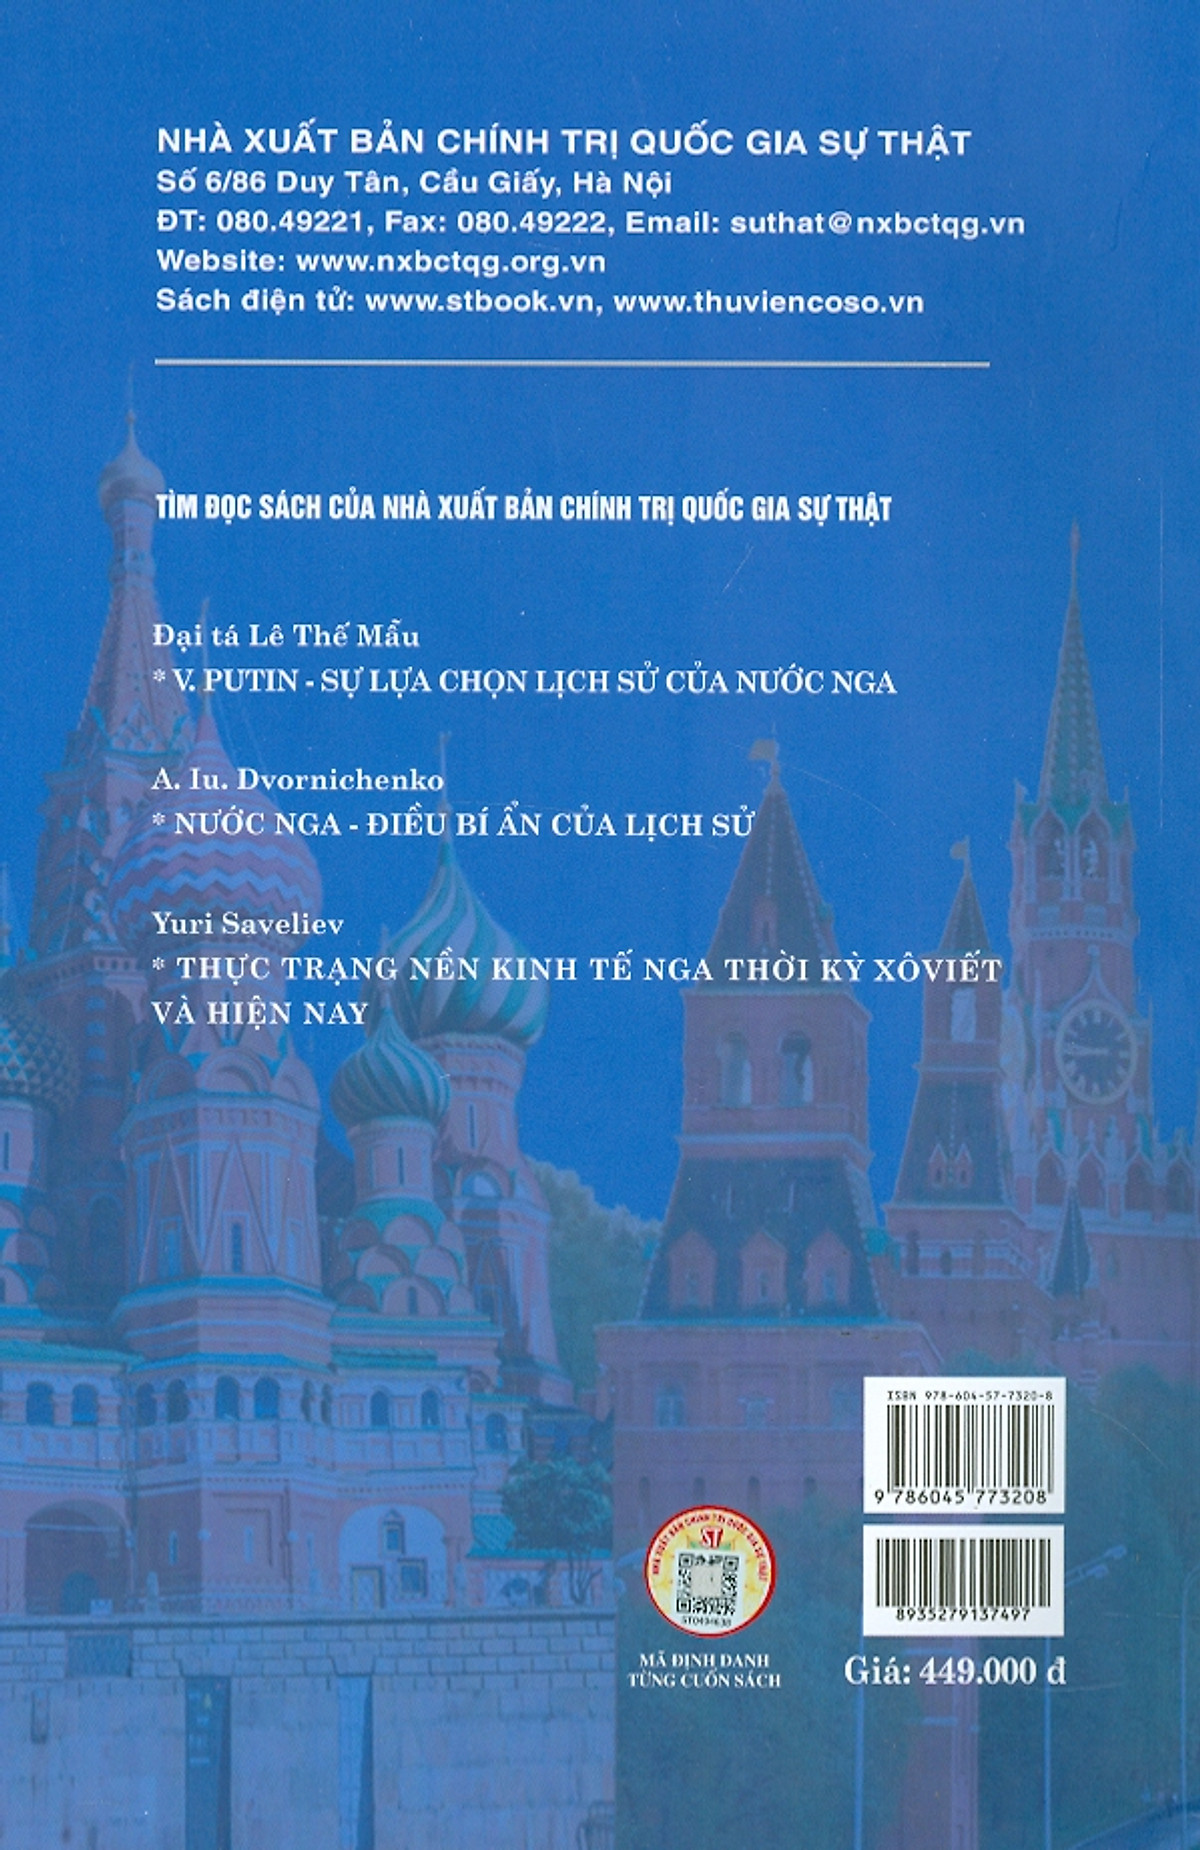 Nước Nga Dưới Sự Lãnh Đạo Của Putin: Kinh Tế, Quốc Phòng Và Chính Sách Đối Ngoại